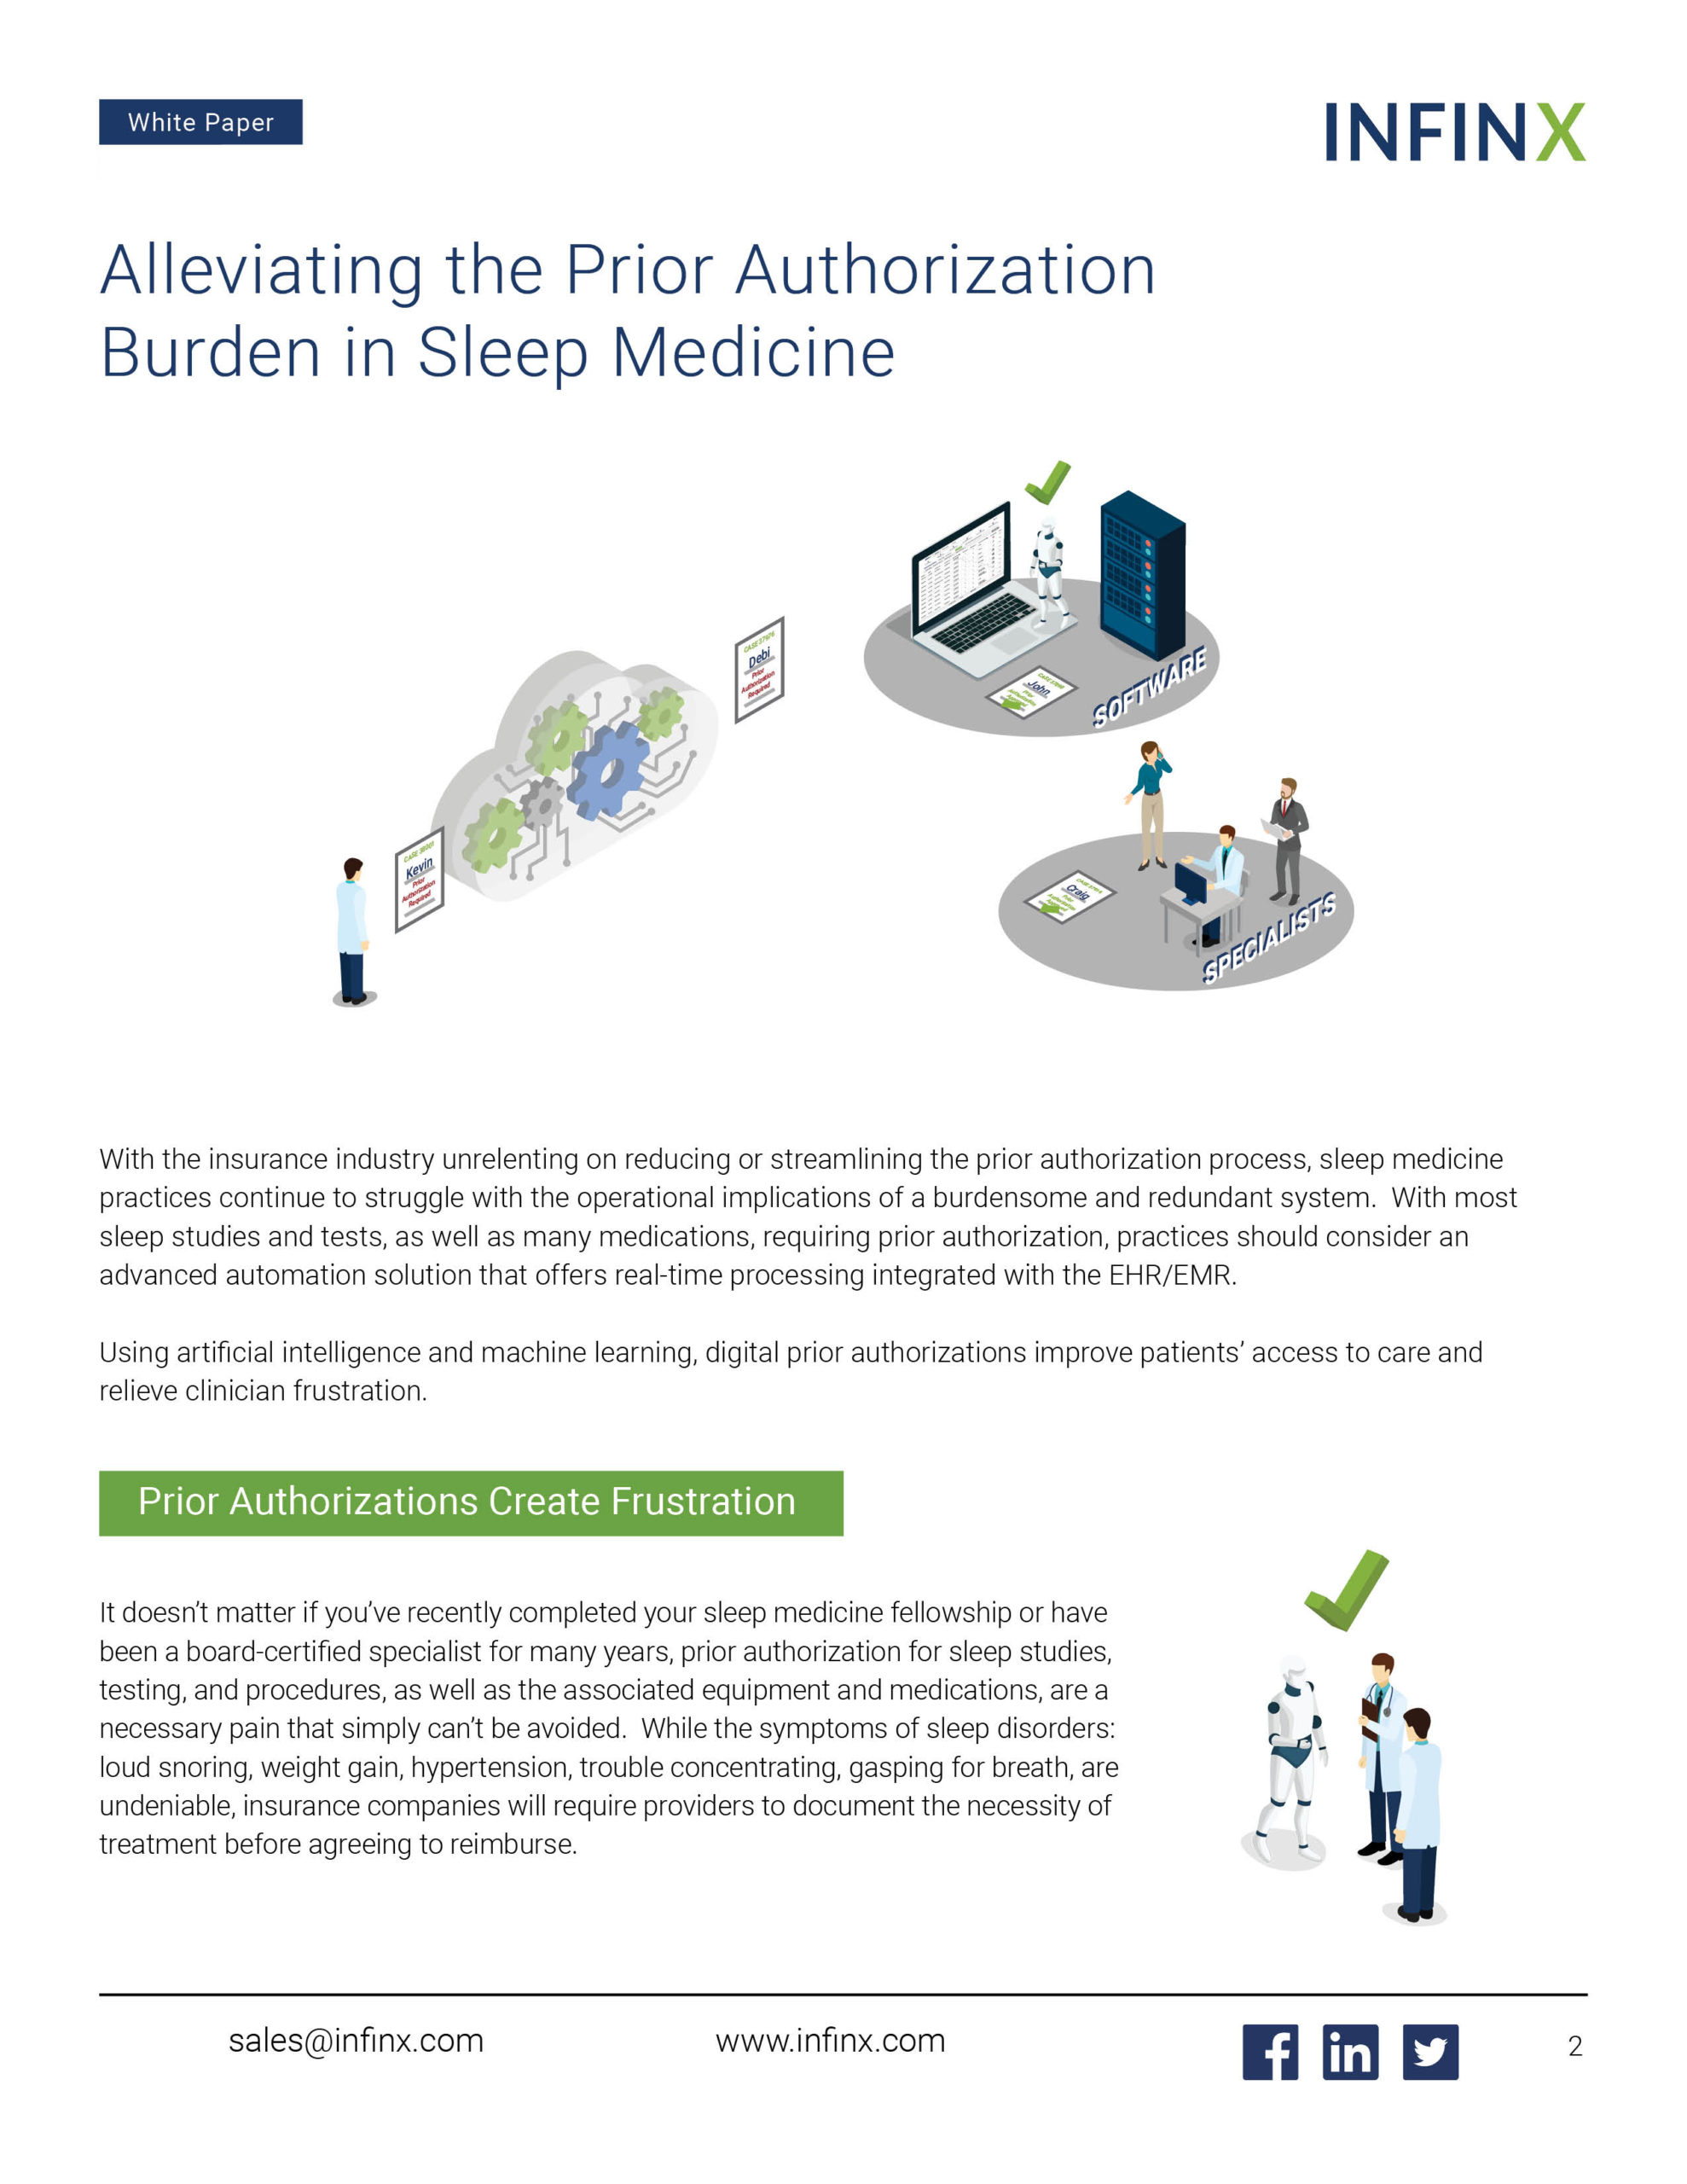 Infinx - White Paper - Alleviating the Prior Authorization Burden in Sleep Medicine June2021 2